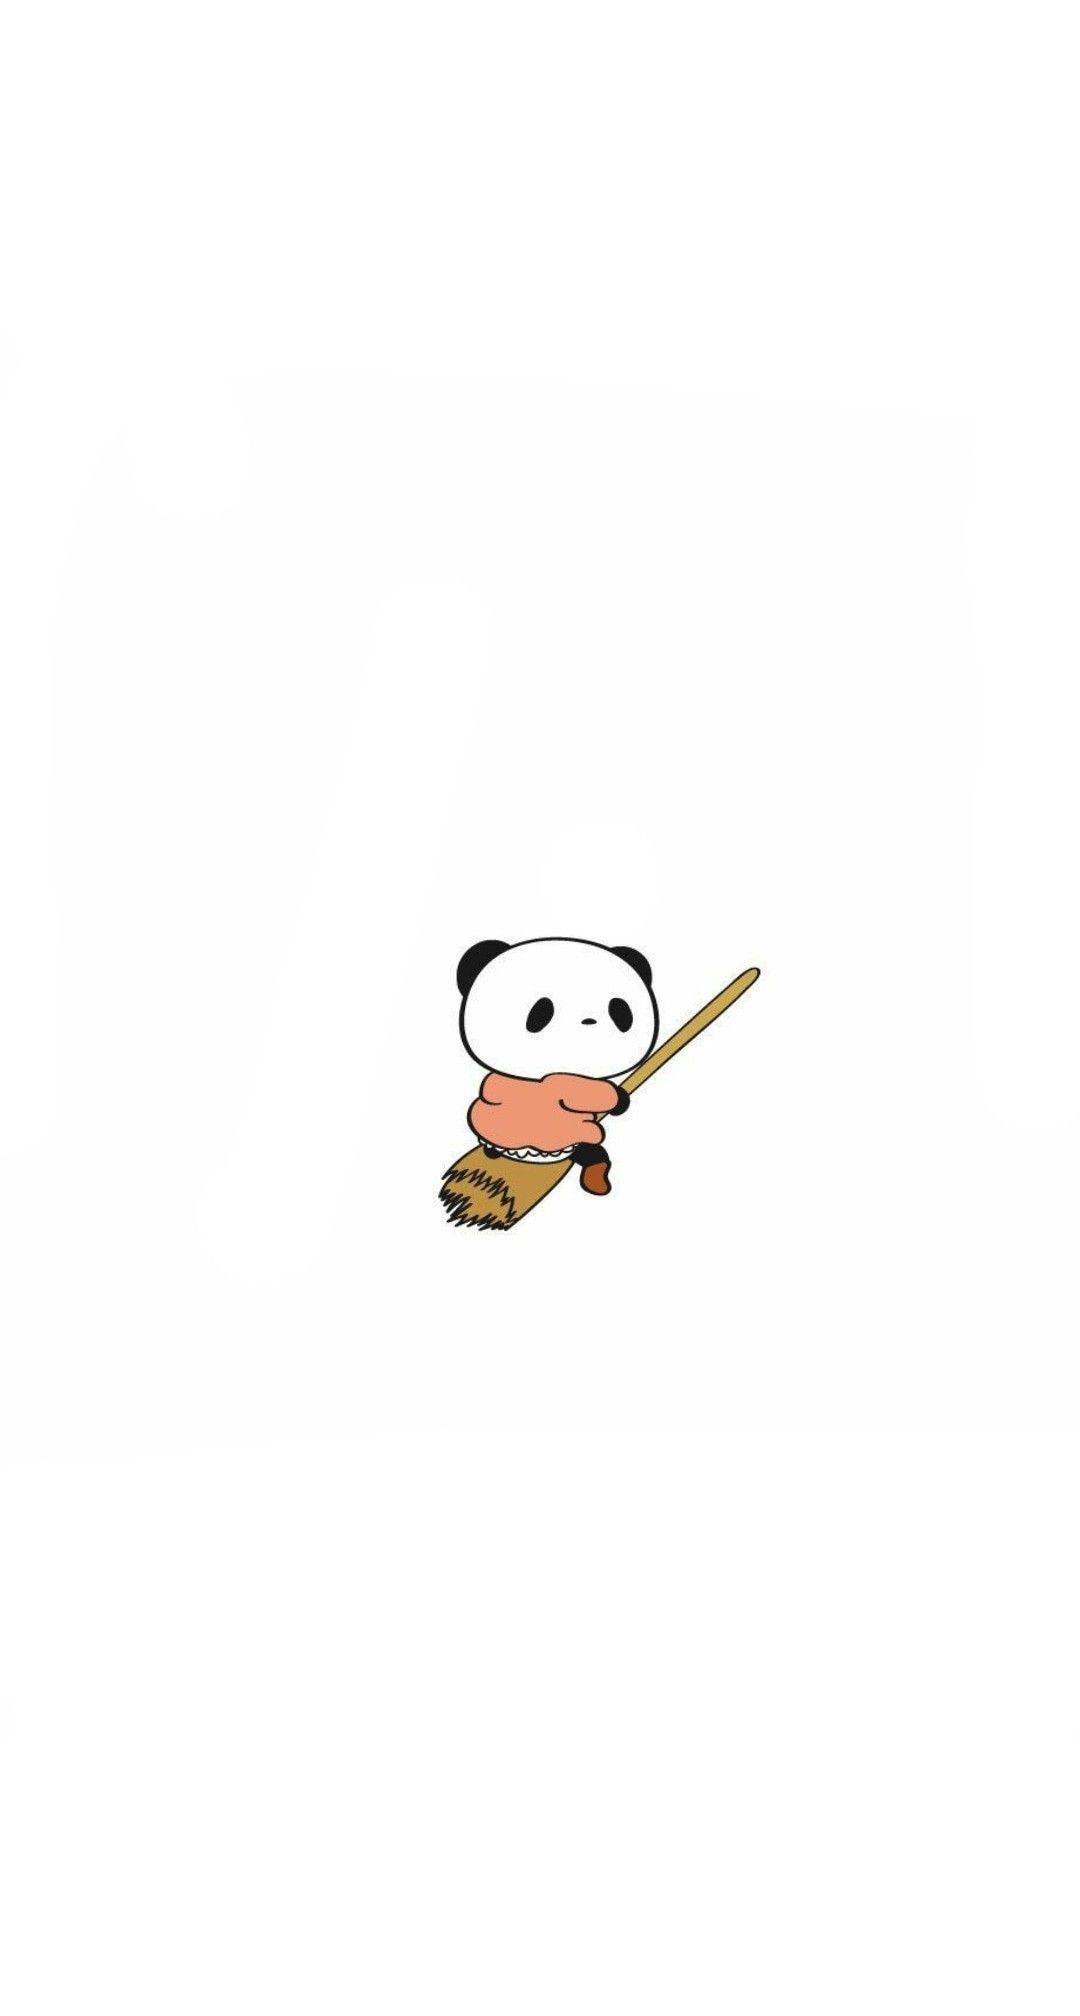 Download Aesthetic Panda Riding Broomstick Wallpaper